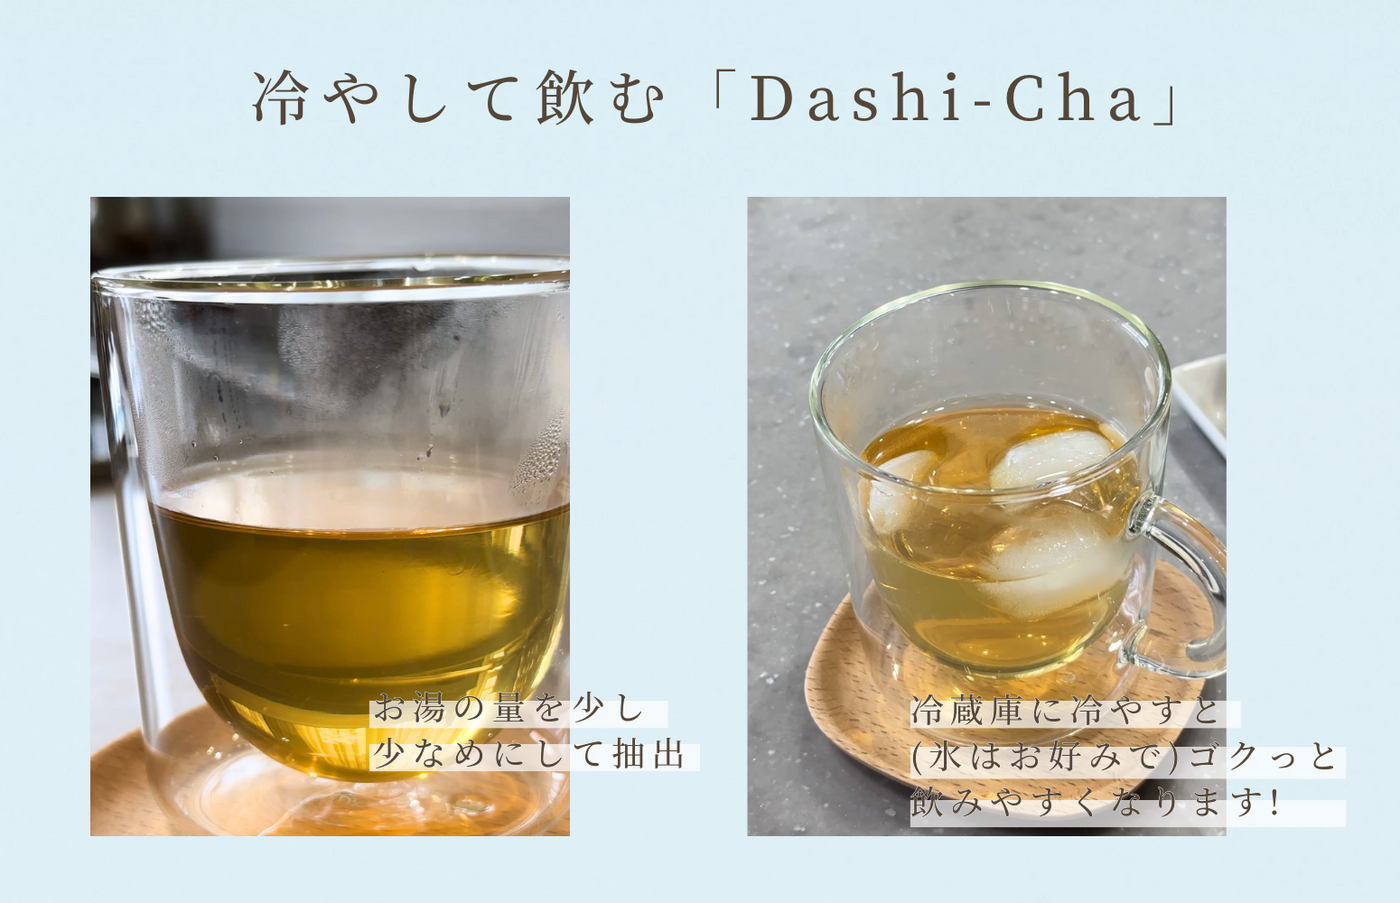 「Dashi-Cha」 かつお 10食入 2箱セット